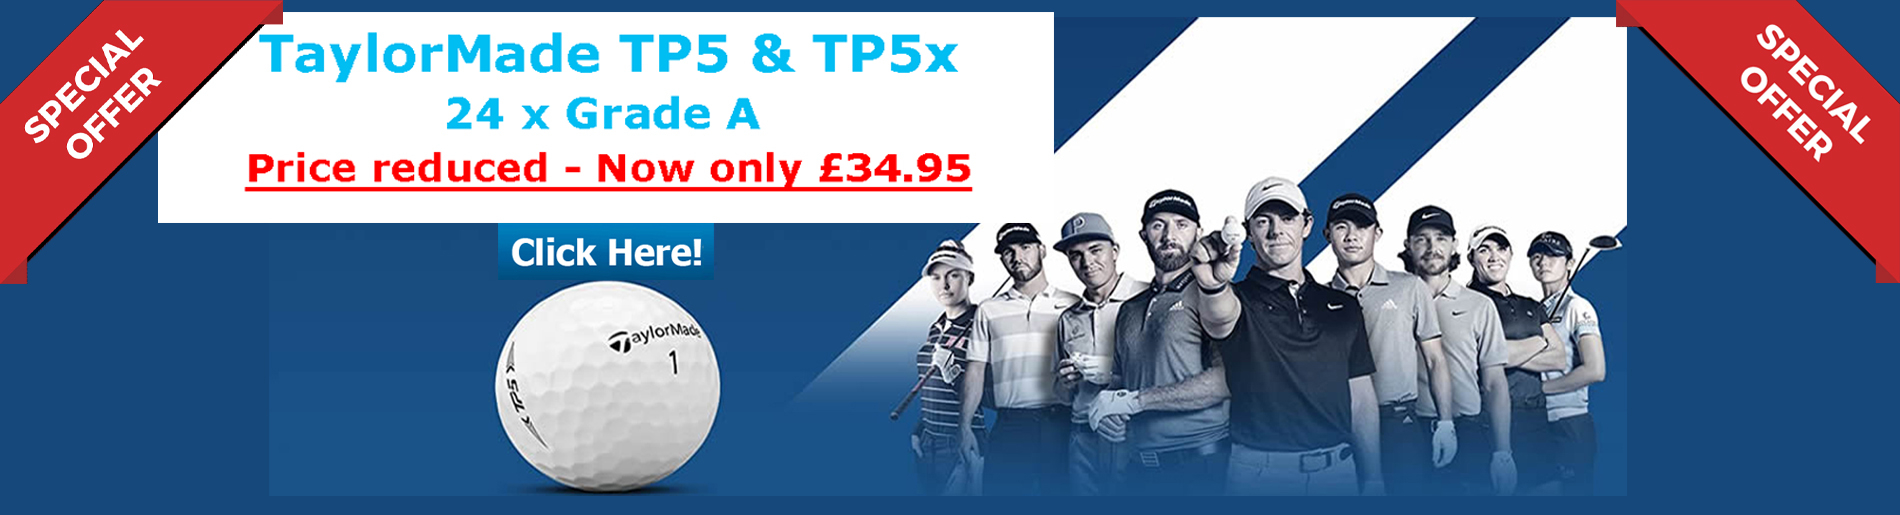 Taylormade TP5 & TP5x Grade A Offer golf balls